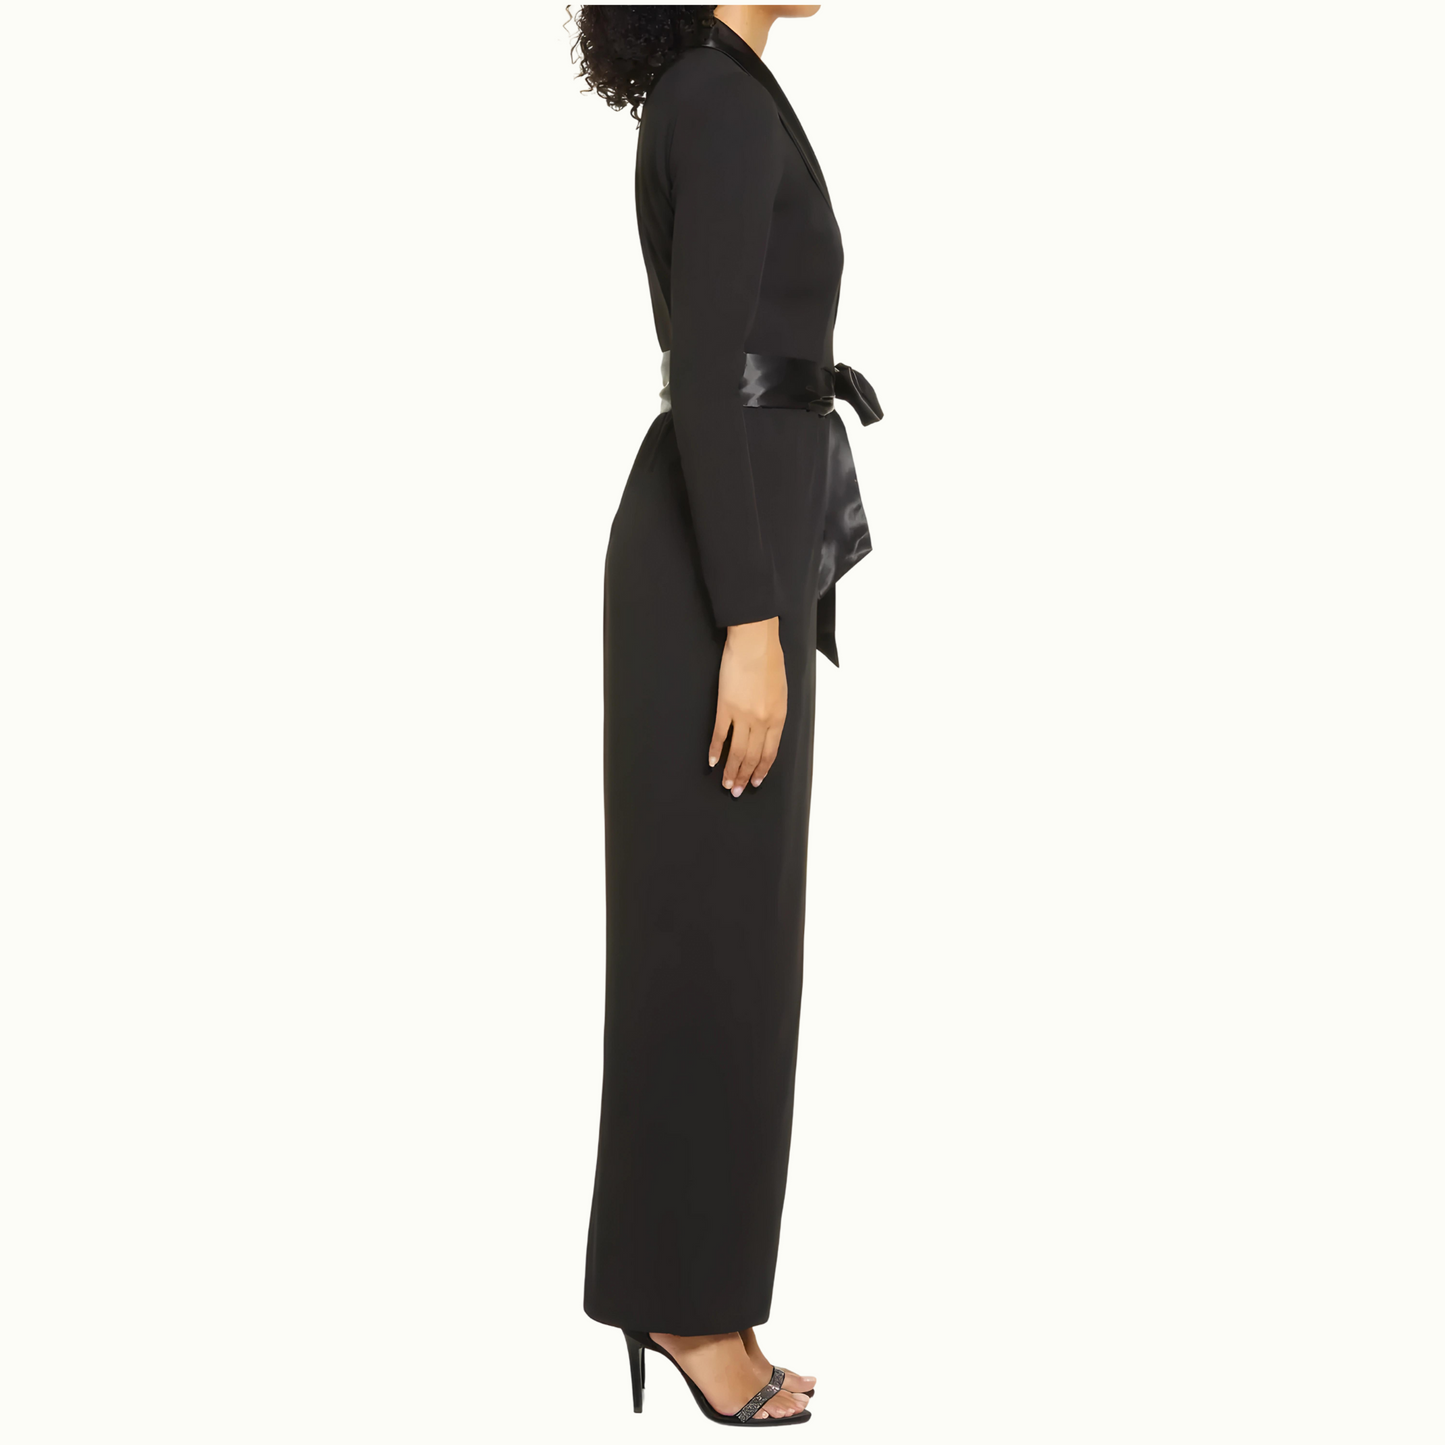 Elegance Redefined: The Tuxedo Femme Dress